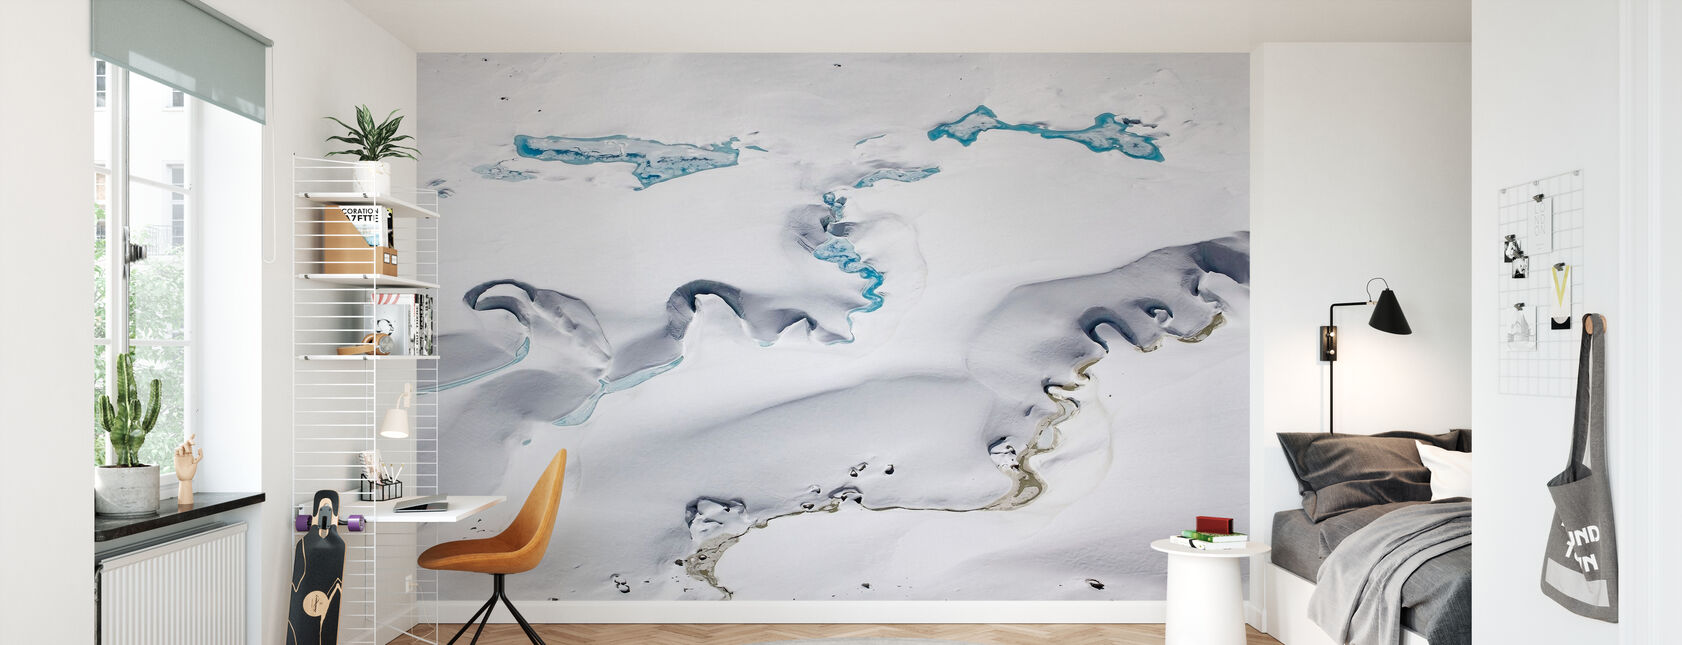 Glacier Gorner avec canaux d'eau de fonte - Papier peint - Chambre des enfants